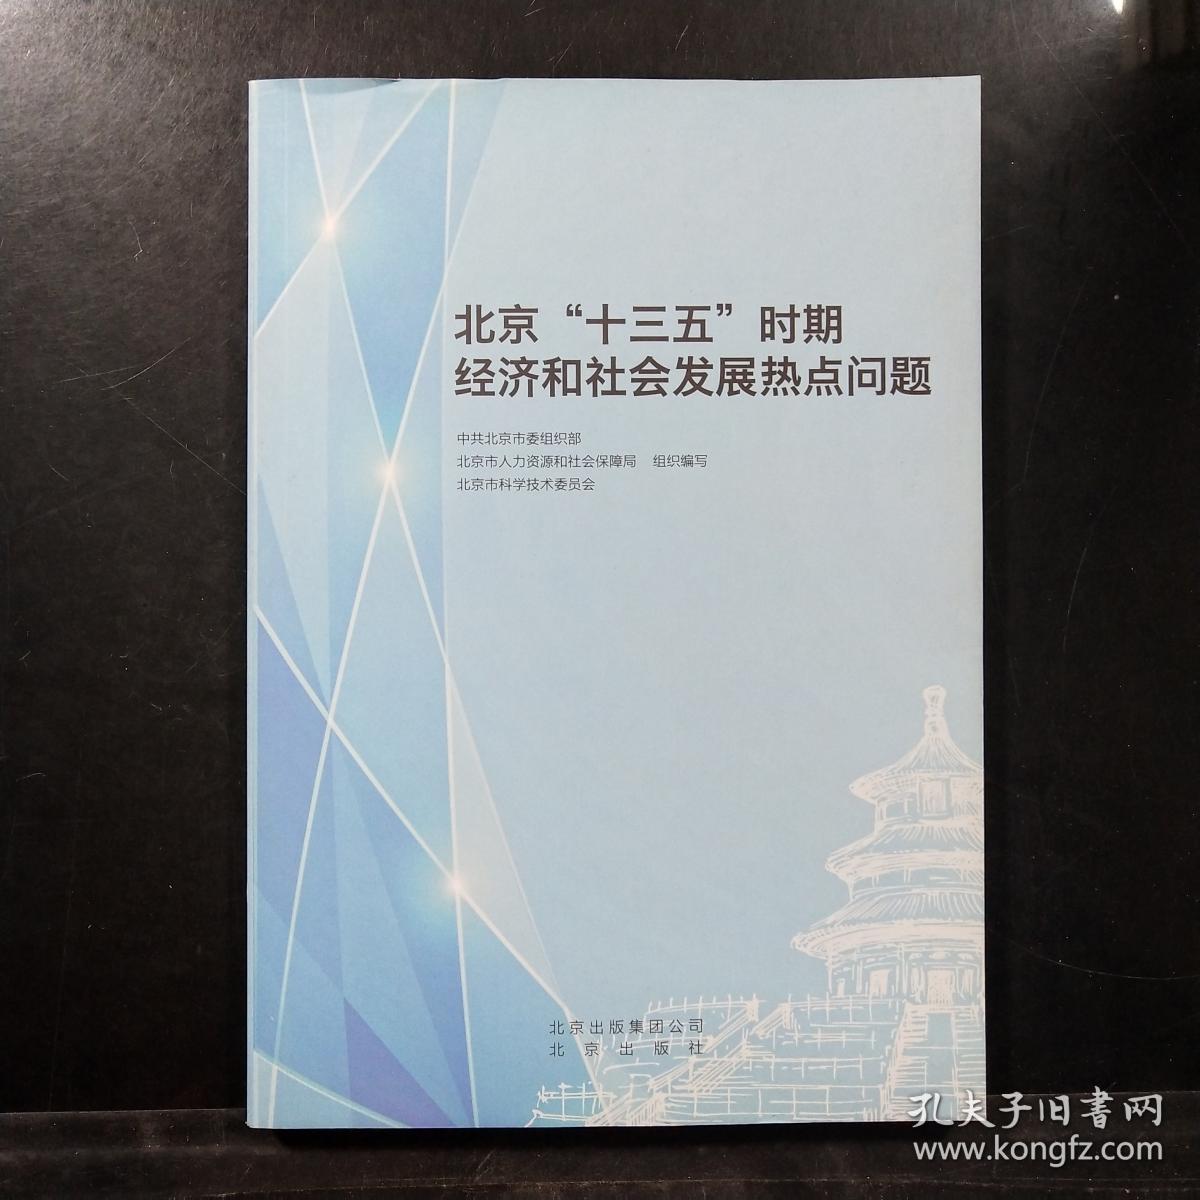 北京十三五时期经济和社会发展热点问题.